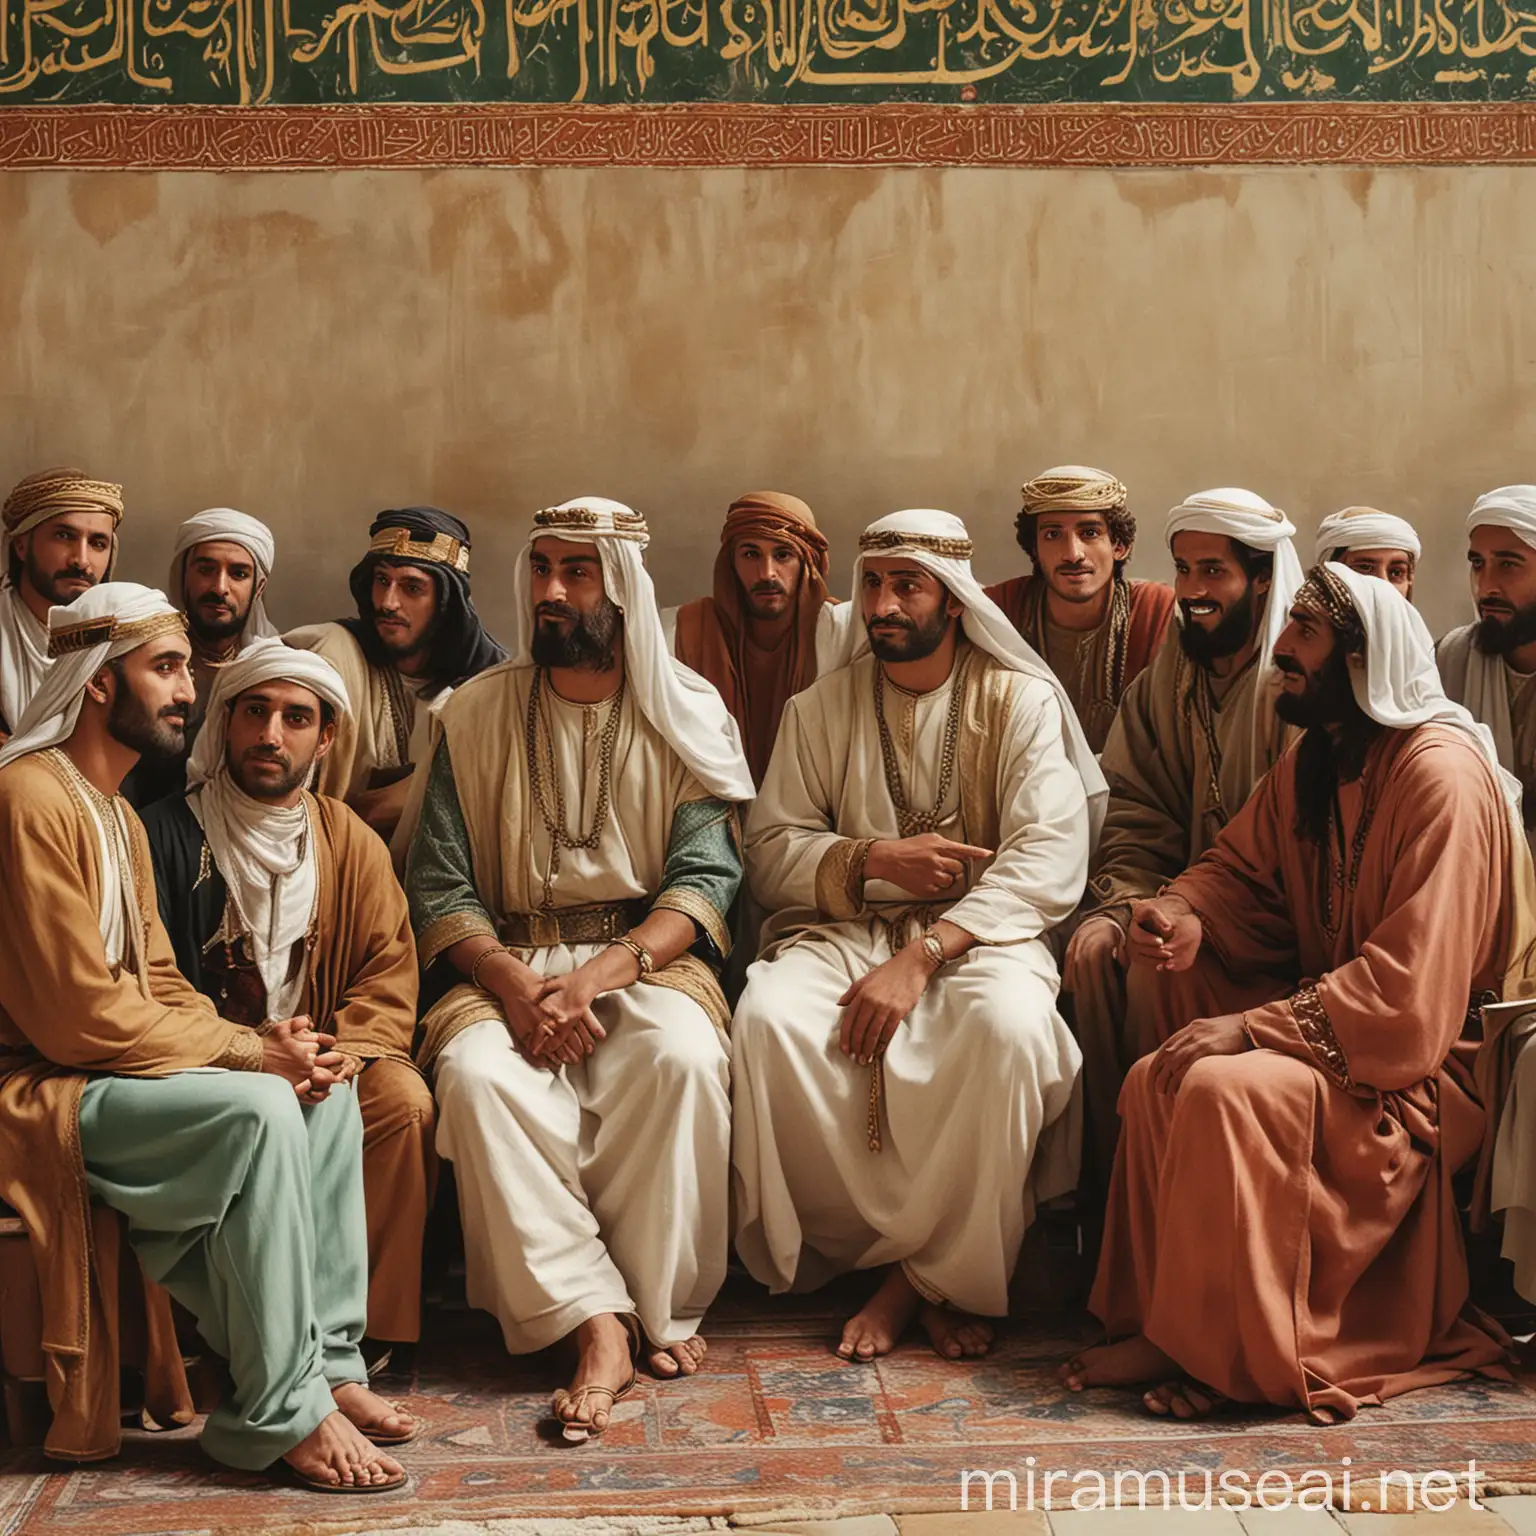 Sixth Century Arabian Group Meeting on Chairs